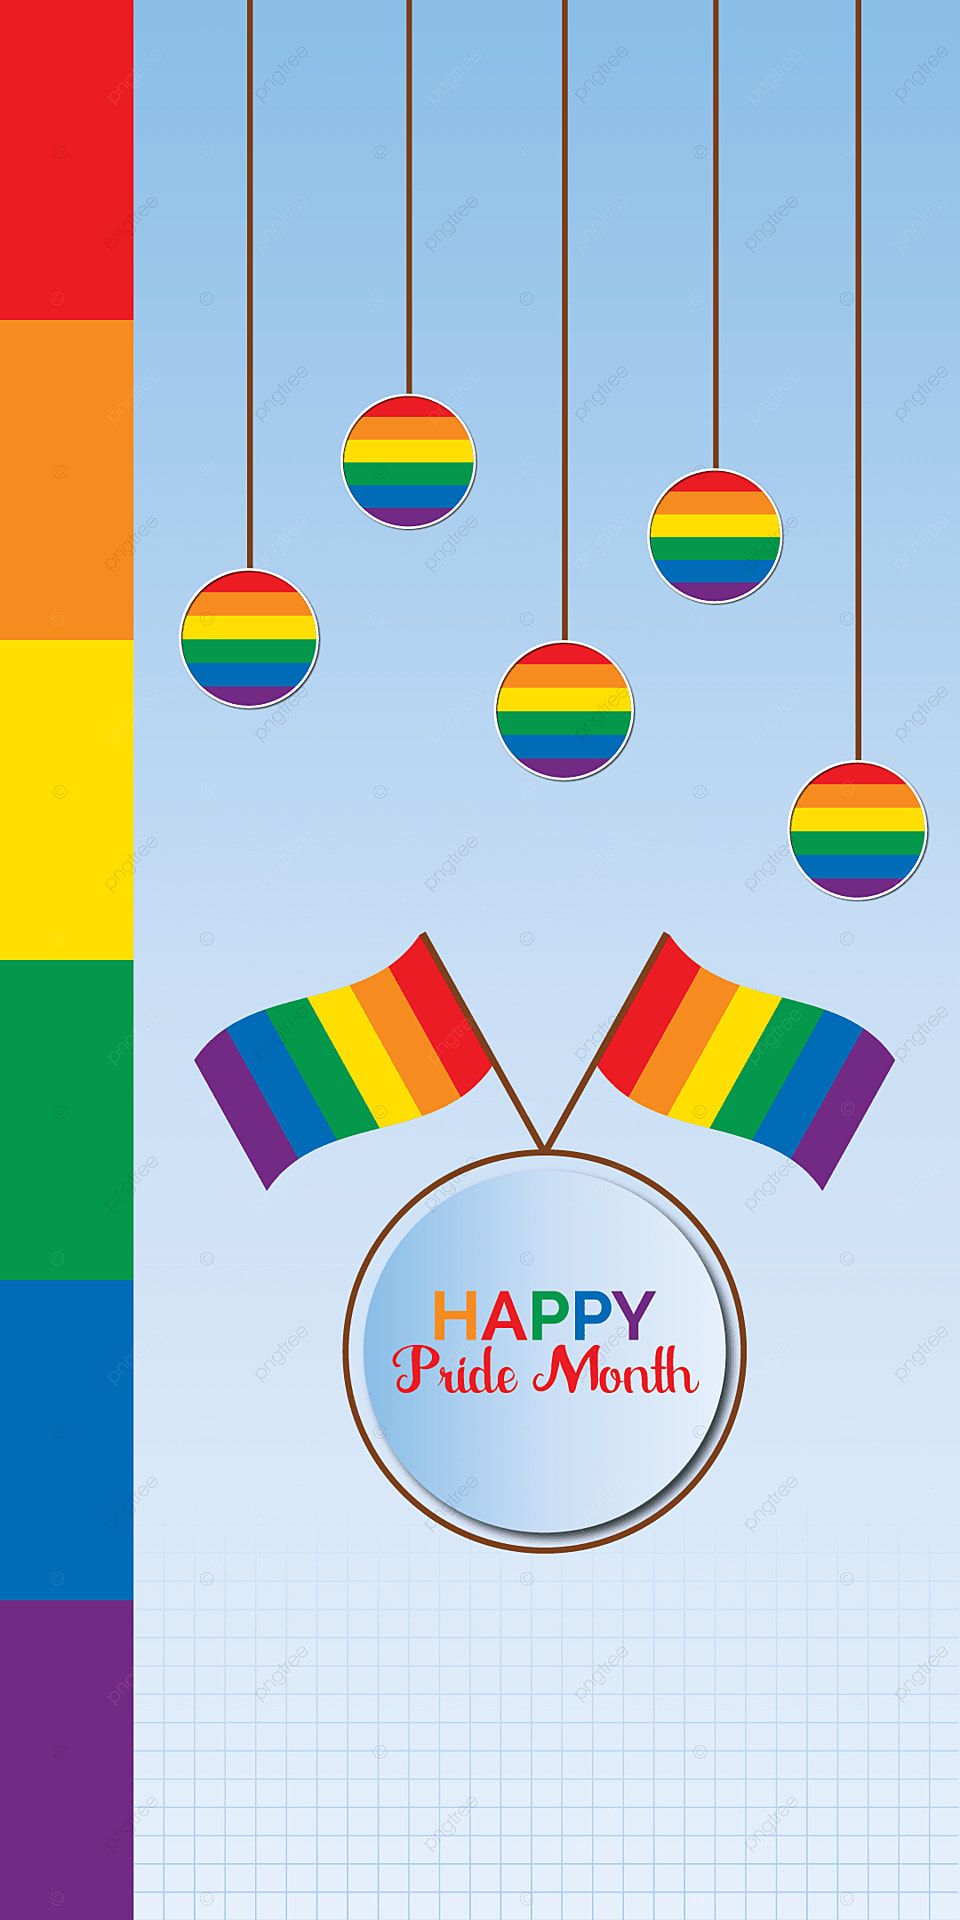 Pride Month Mobile Phone Wallpaper Vector Illustration, Design, Gay, Illustration Background Image for Free Download